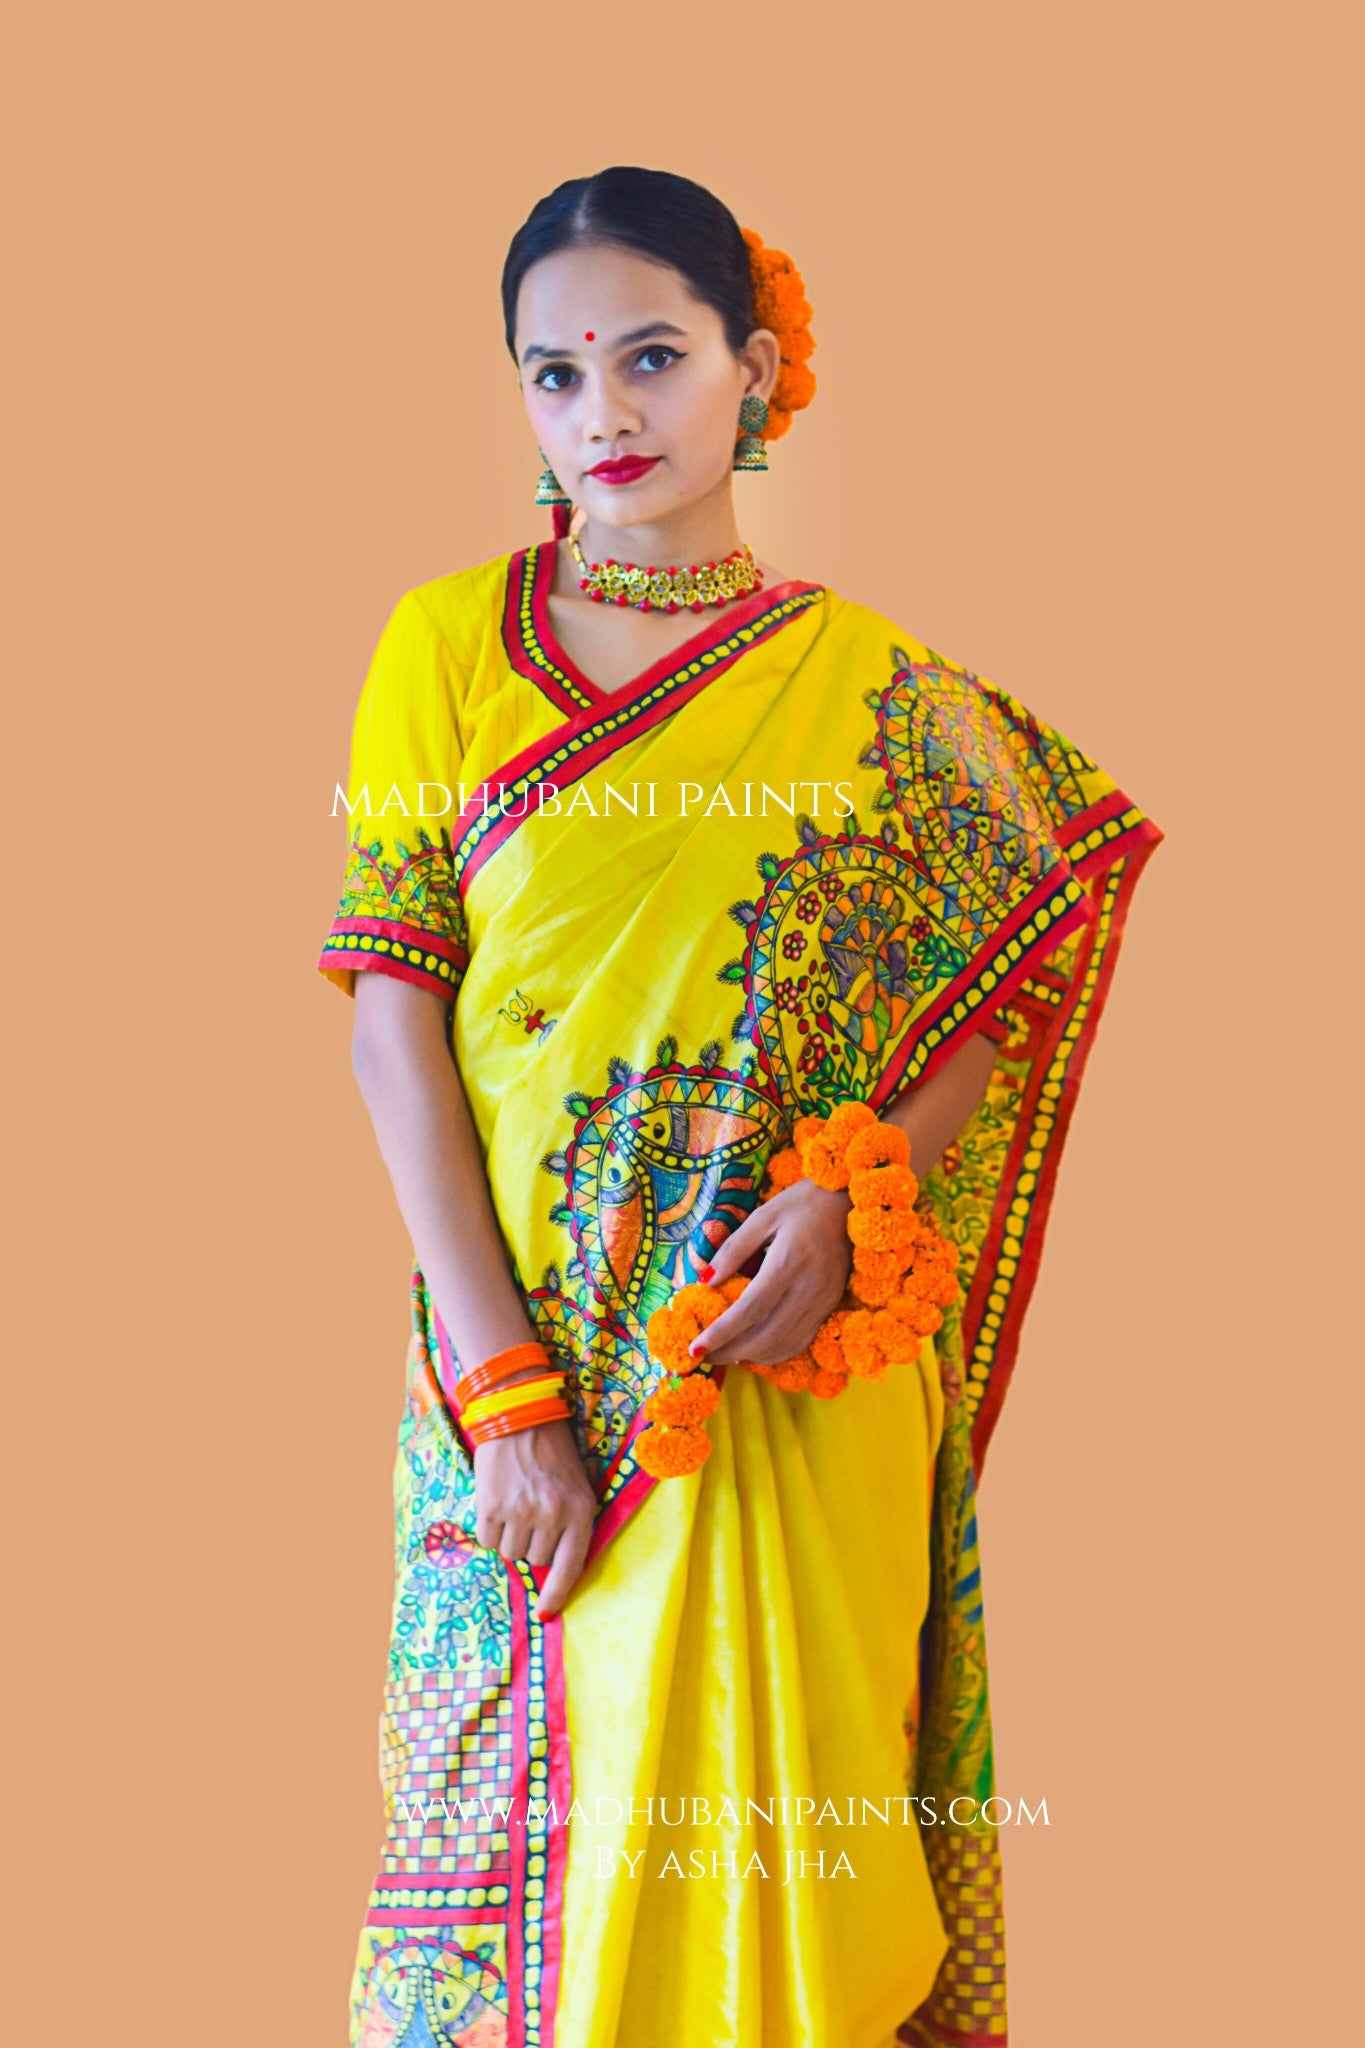 SHIV PARVATI VIVAH Hand-painted Madhubani Tussar Silk Blouse